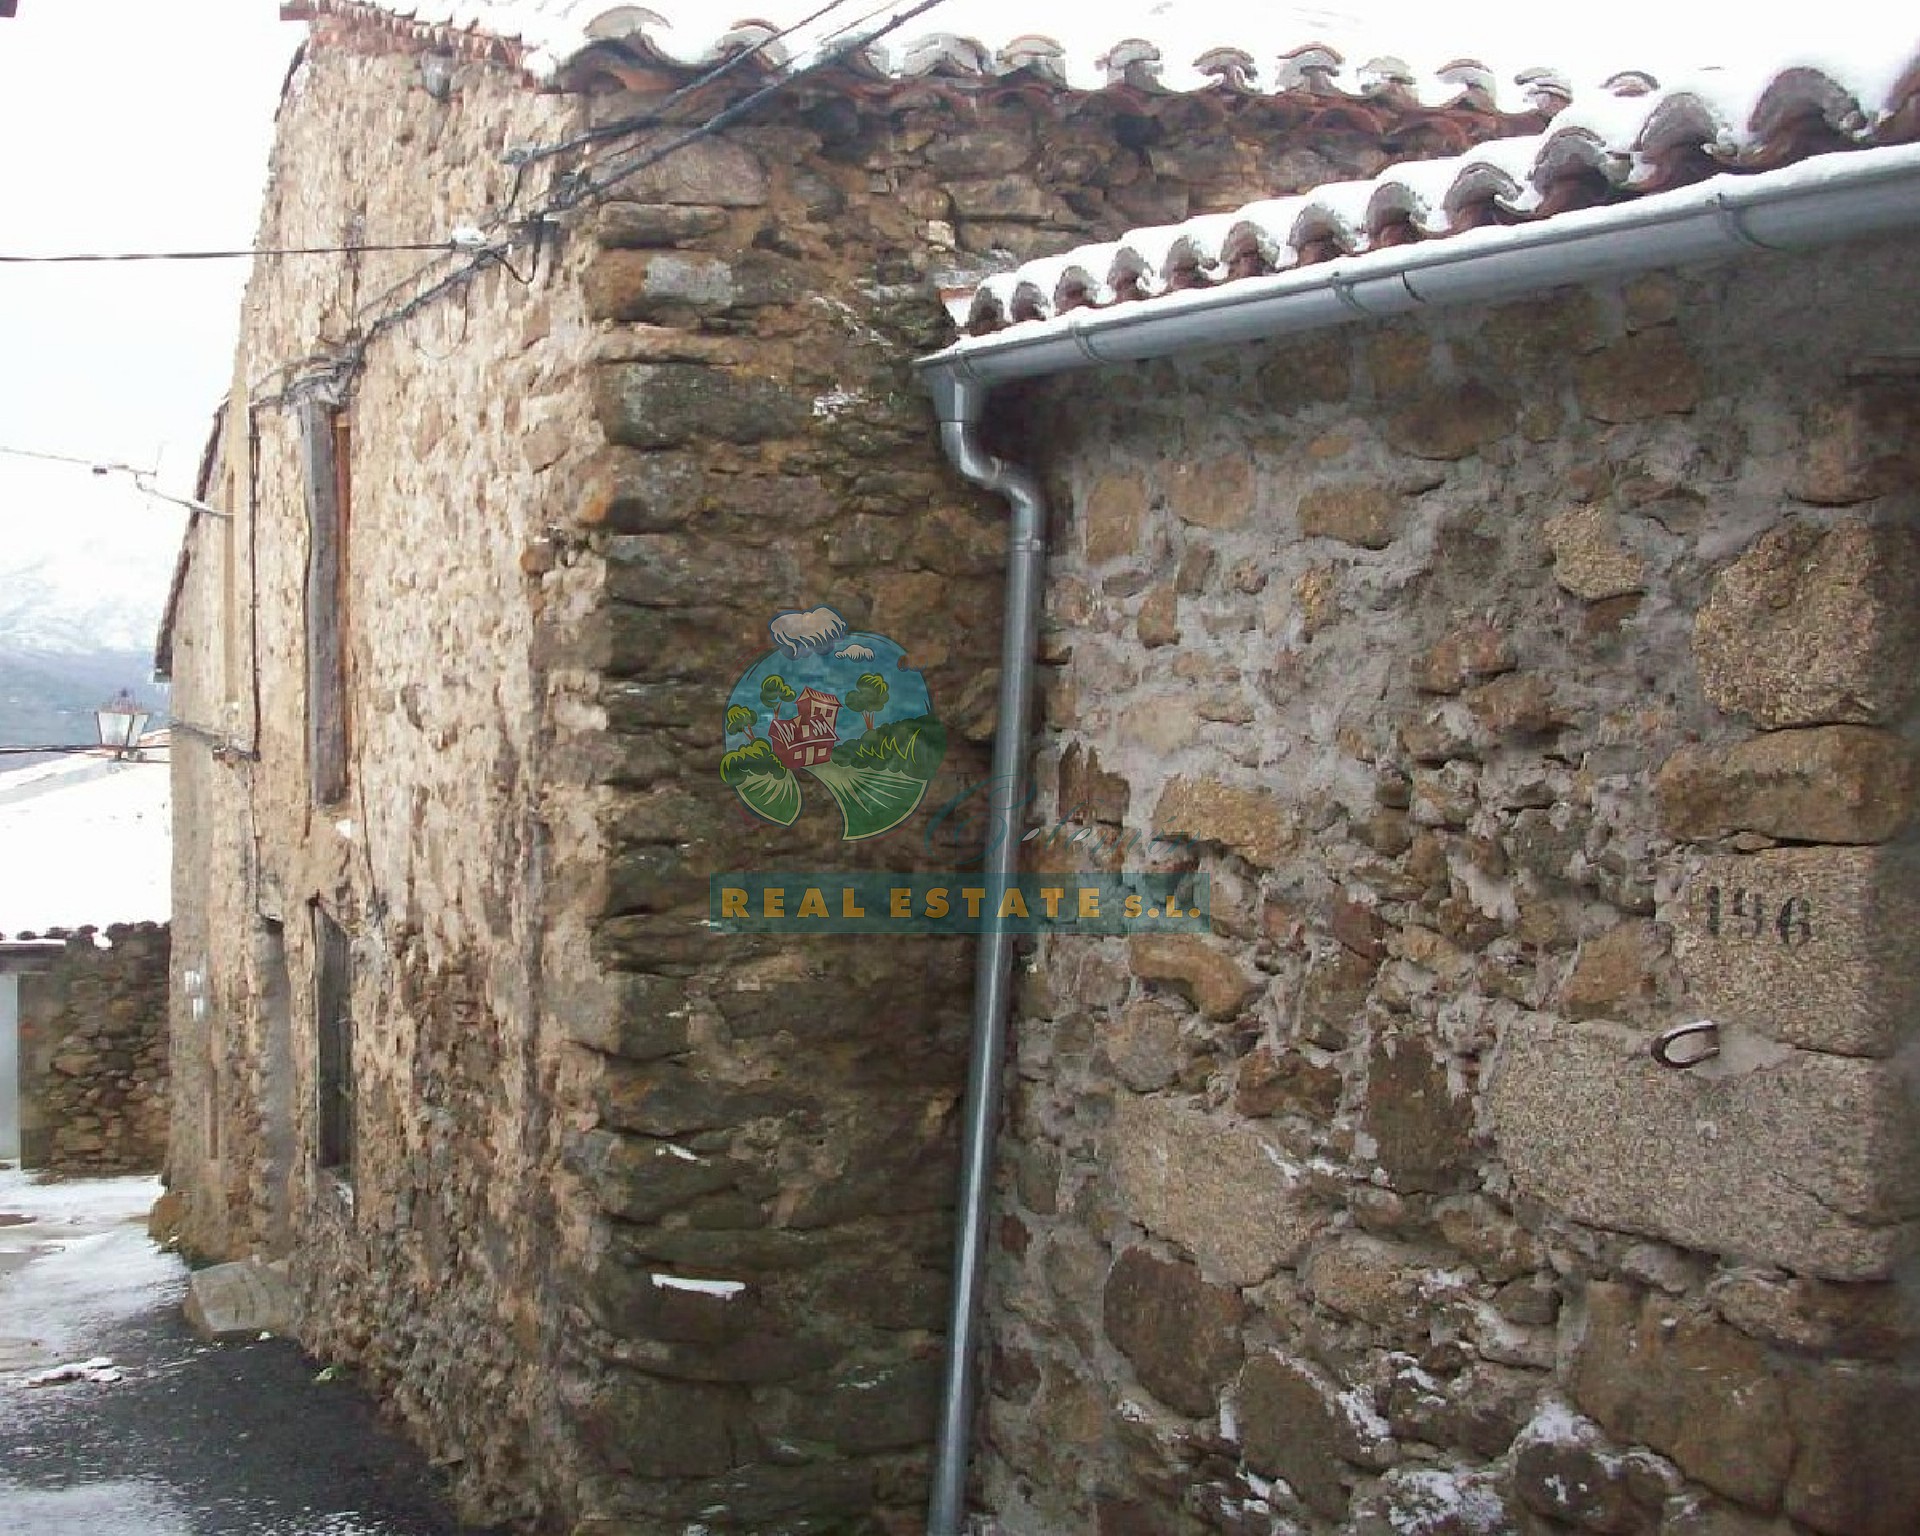 Casa para reformar en Sierra de Gredos.